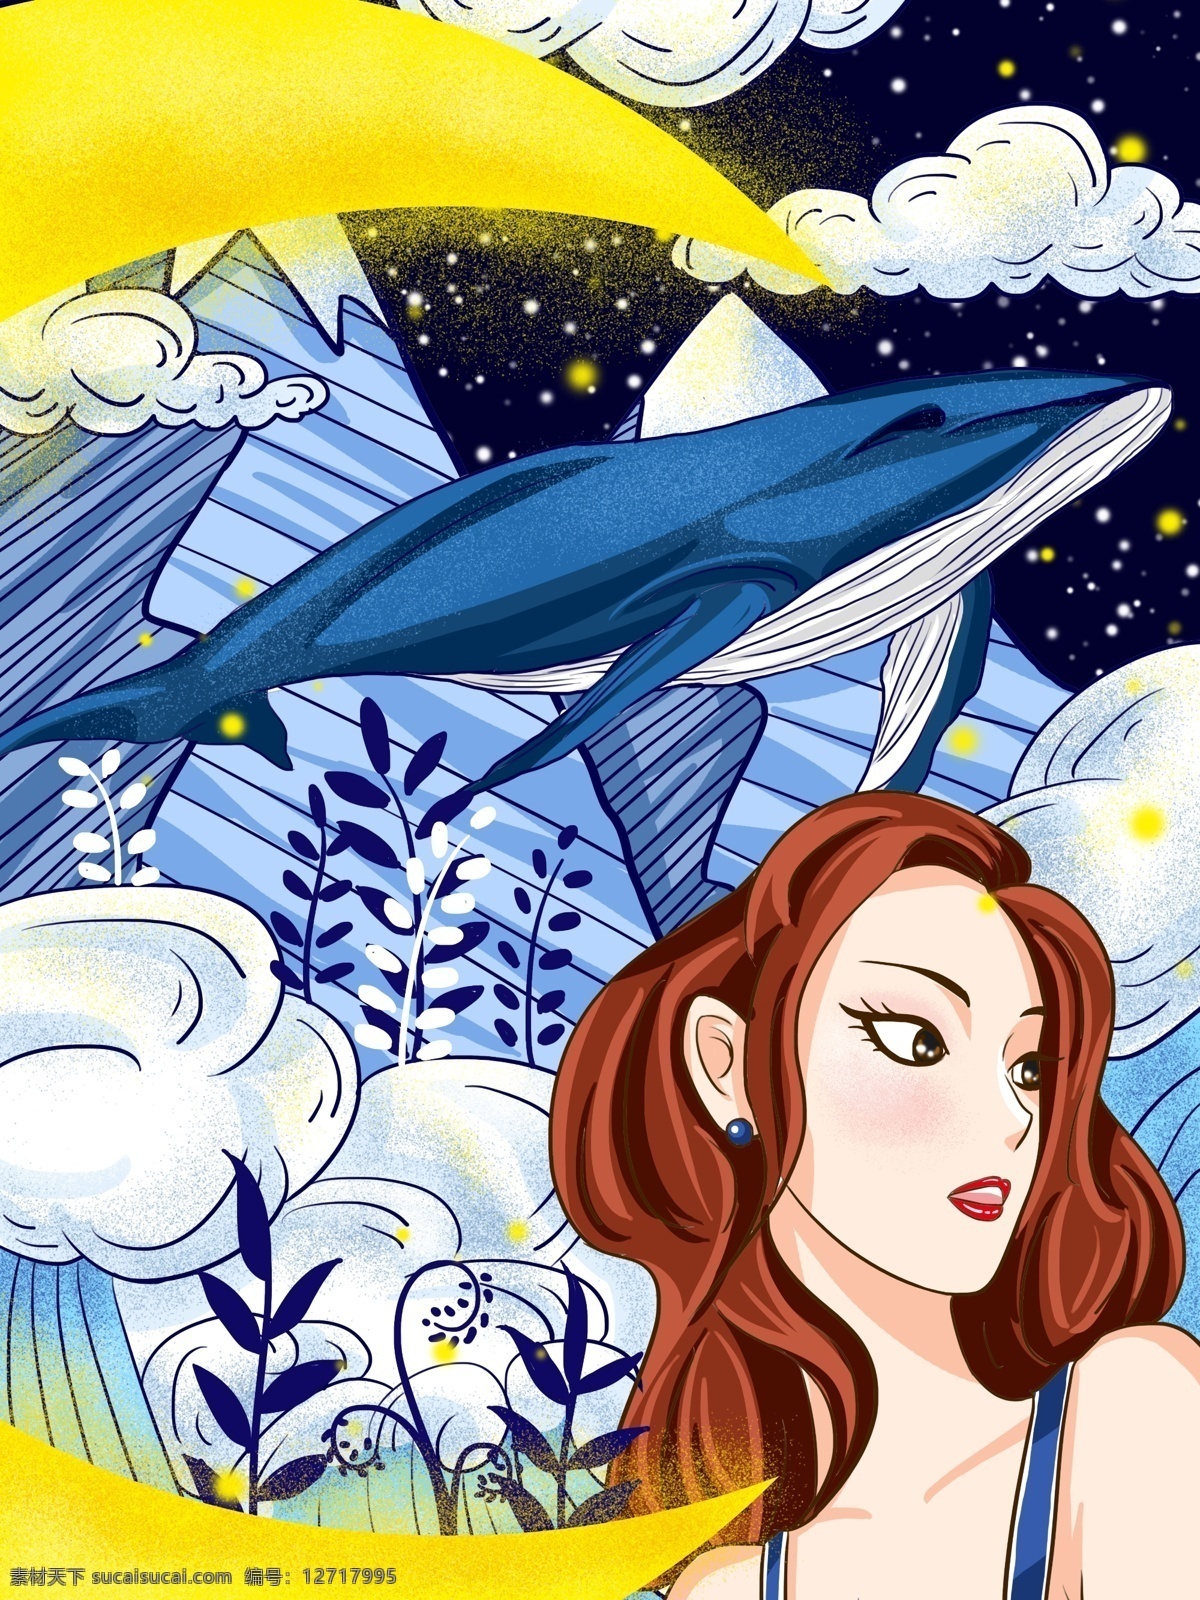 夜空 中 飘舞 鲸 女孩 插画 星空 梦幻 唯美 绘画 治愈 配图 插图